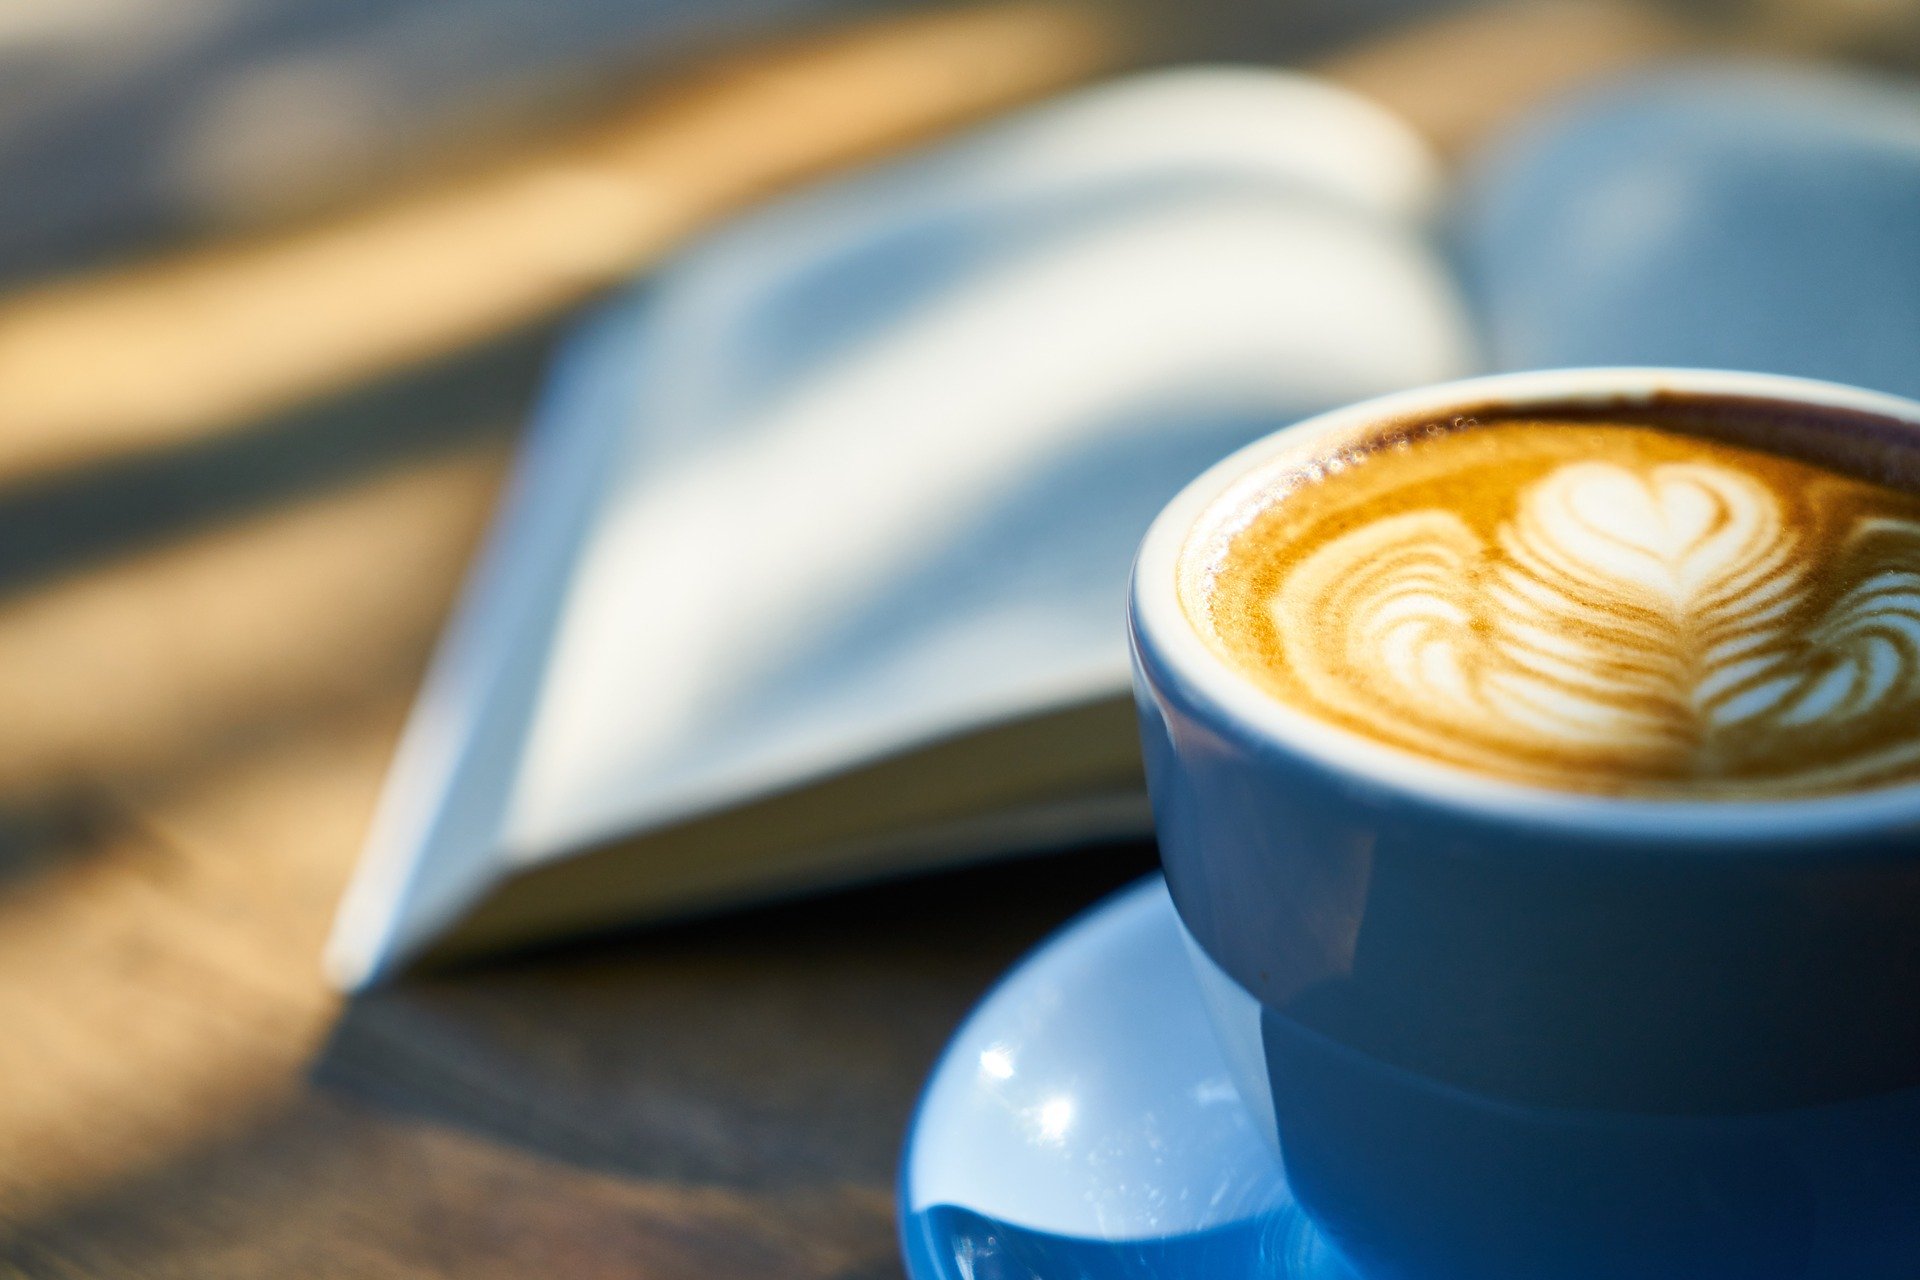 Livro aberto ao lado de uma xícara com café